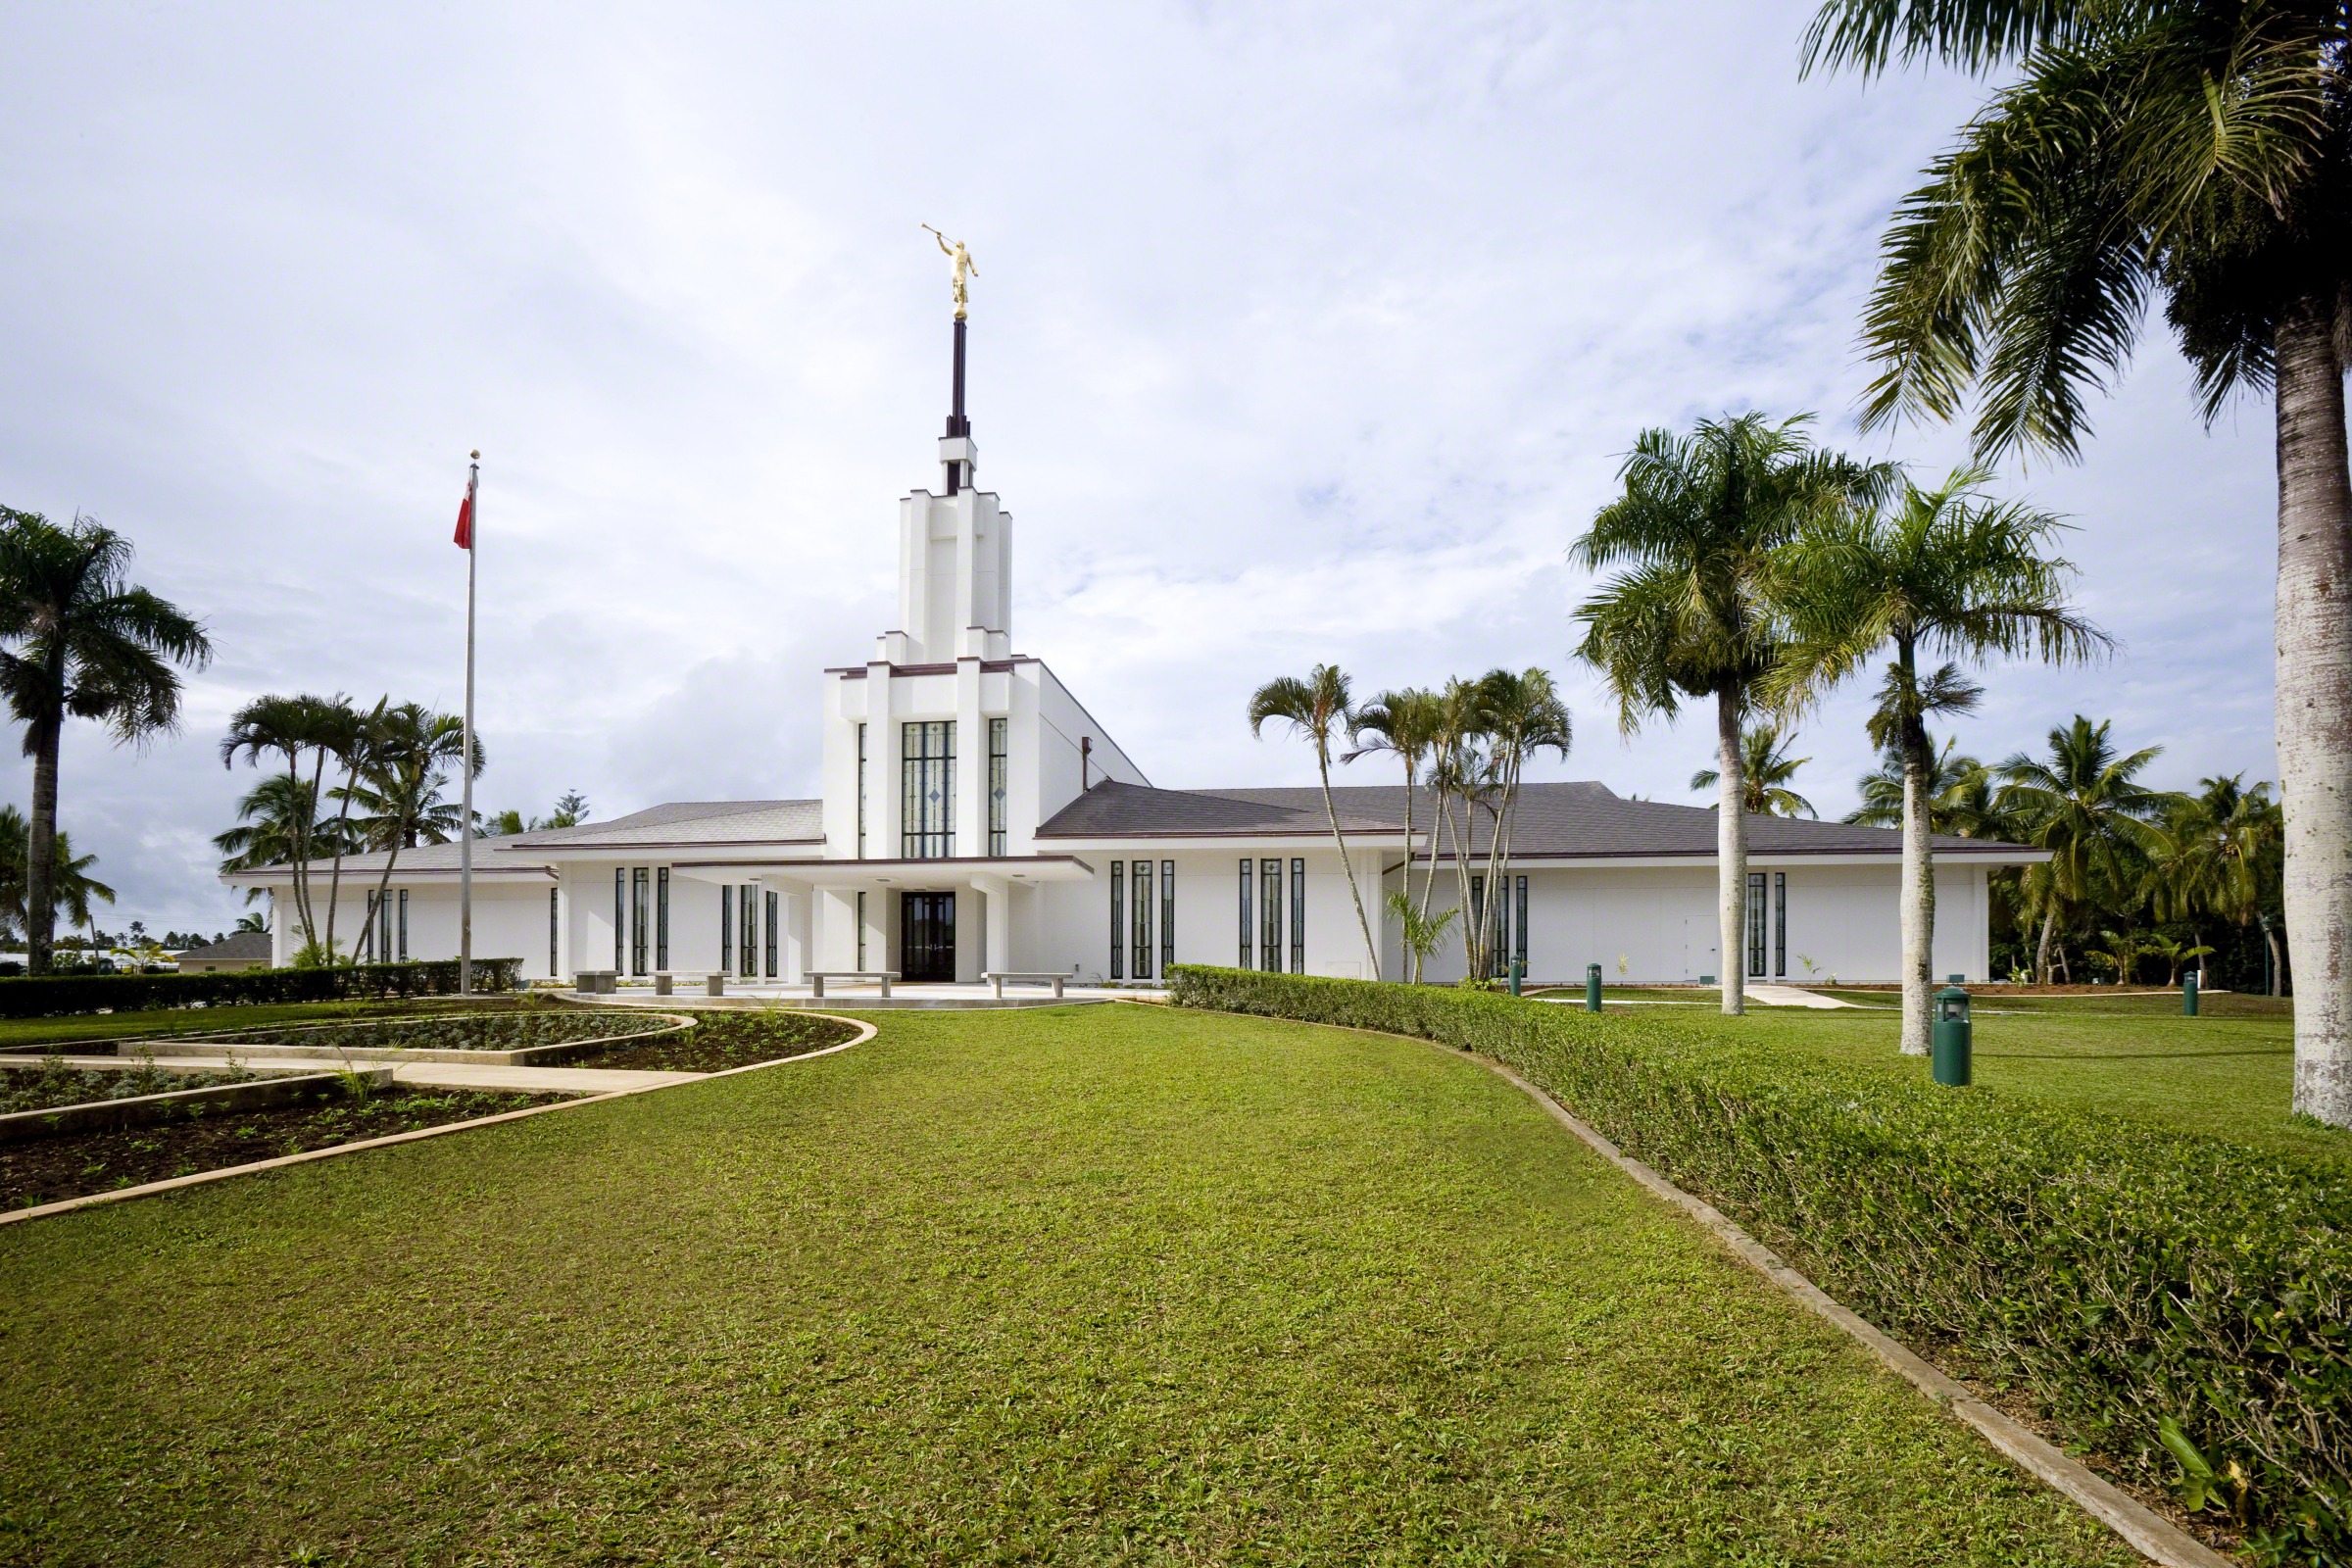 Nuku'alofa Tonga Temple